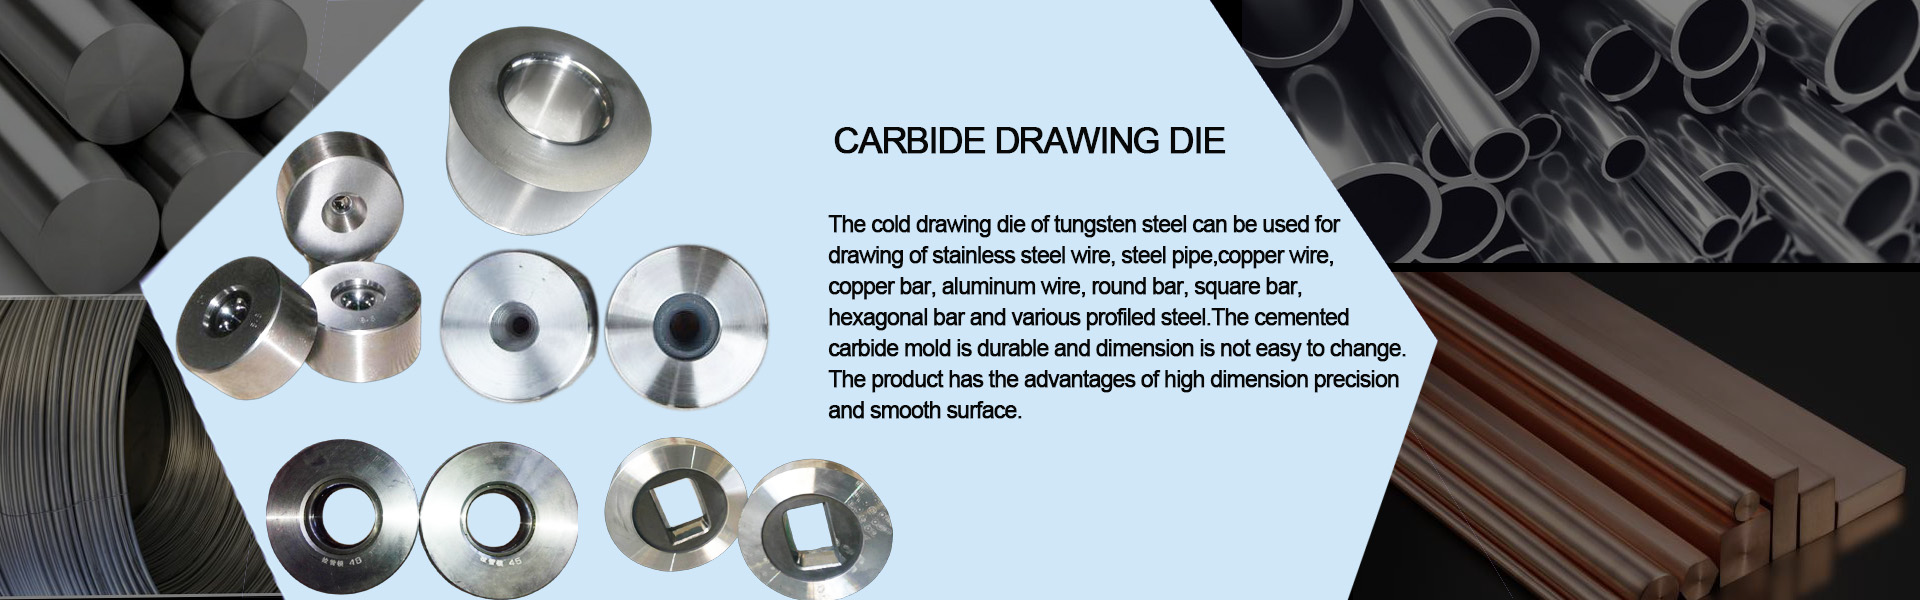 Carbide drawing die